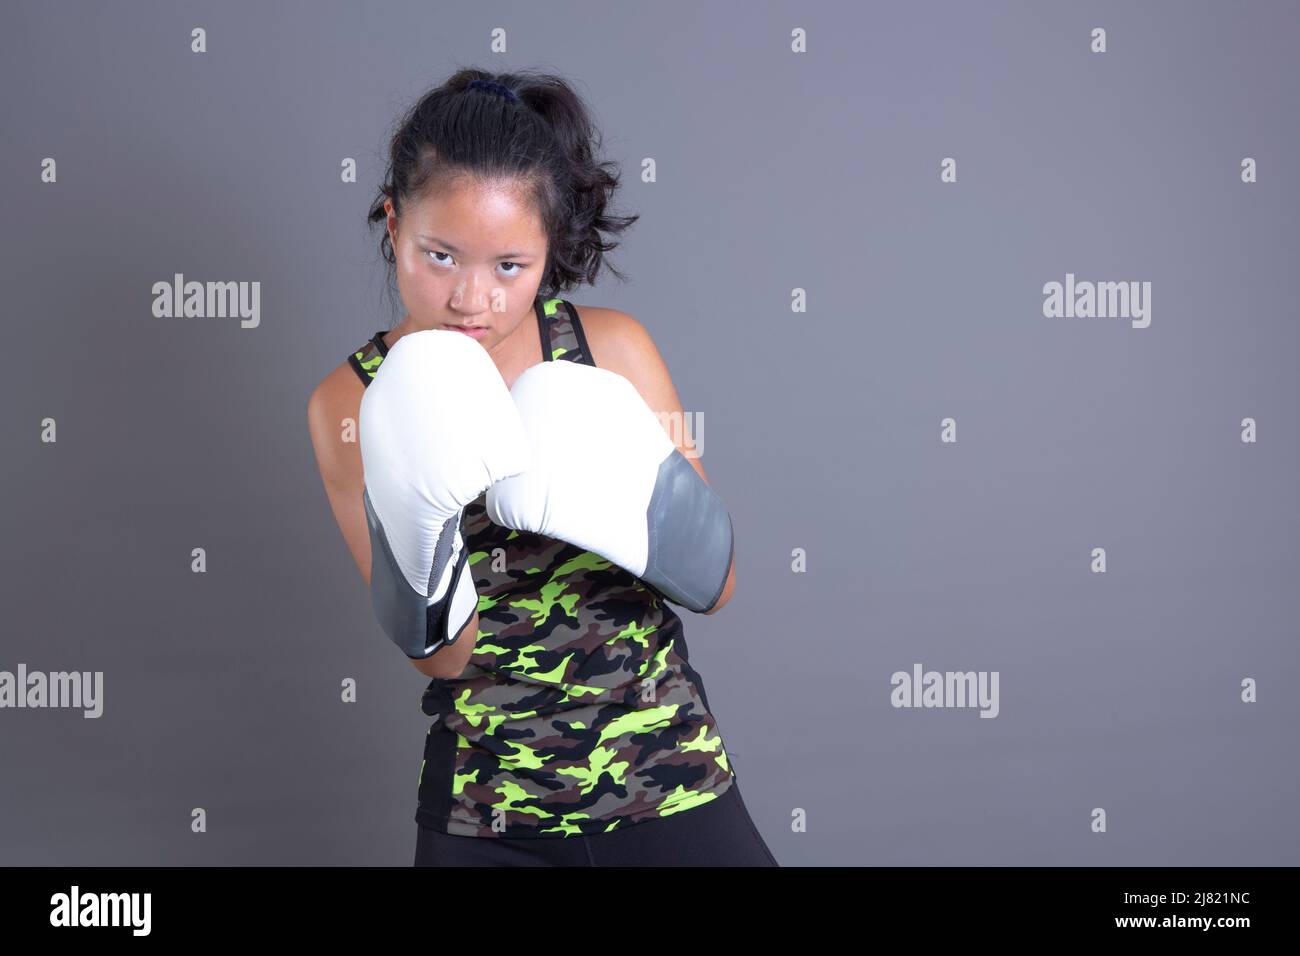 sportif asiatique ethnicité avec gants de boxe Banque D'Images